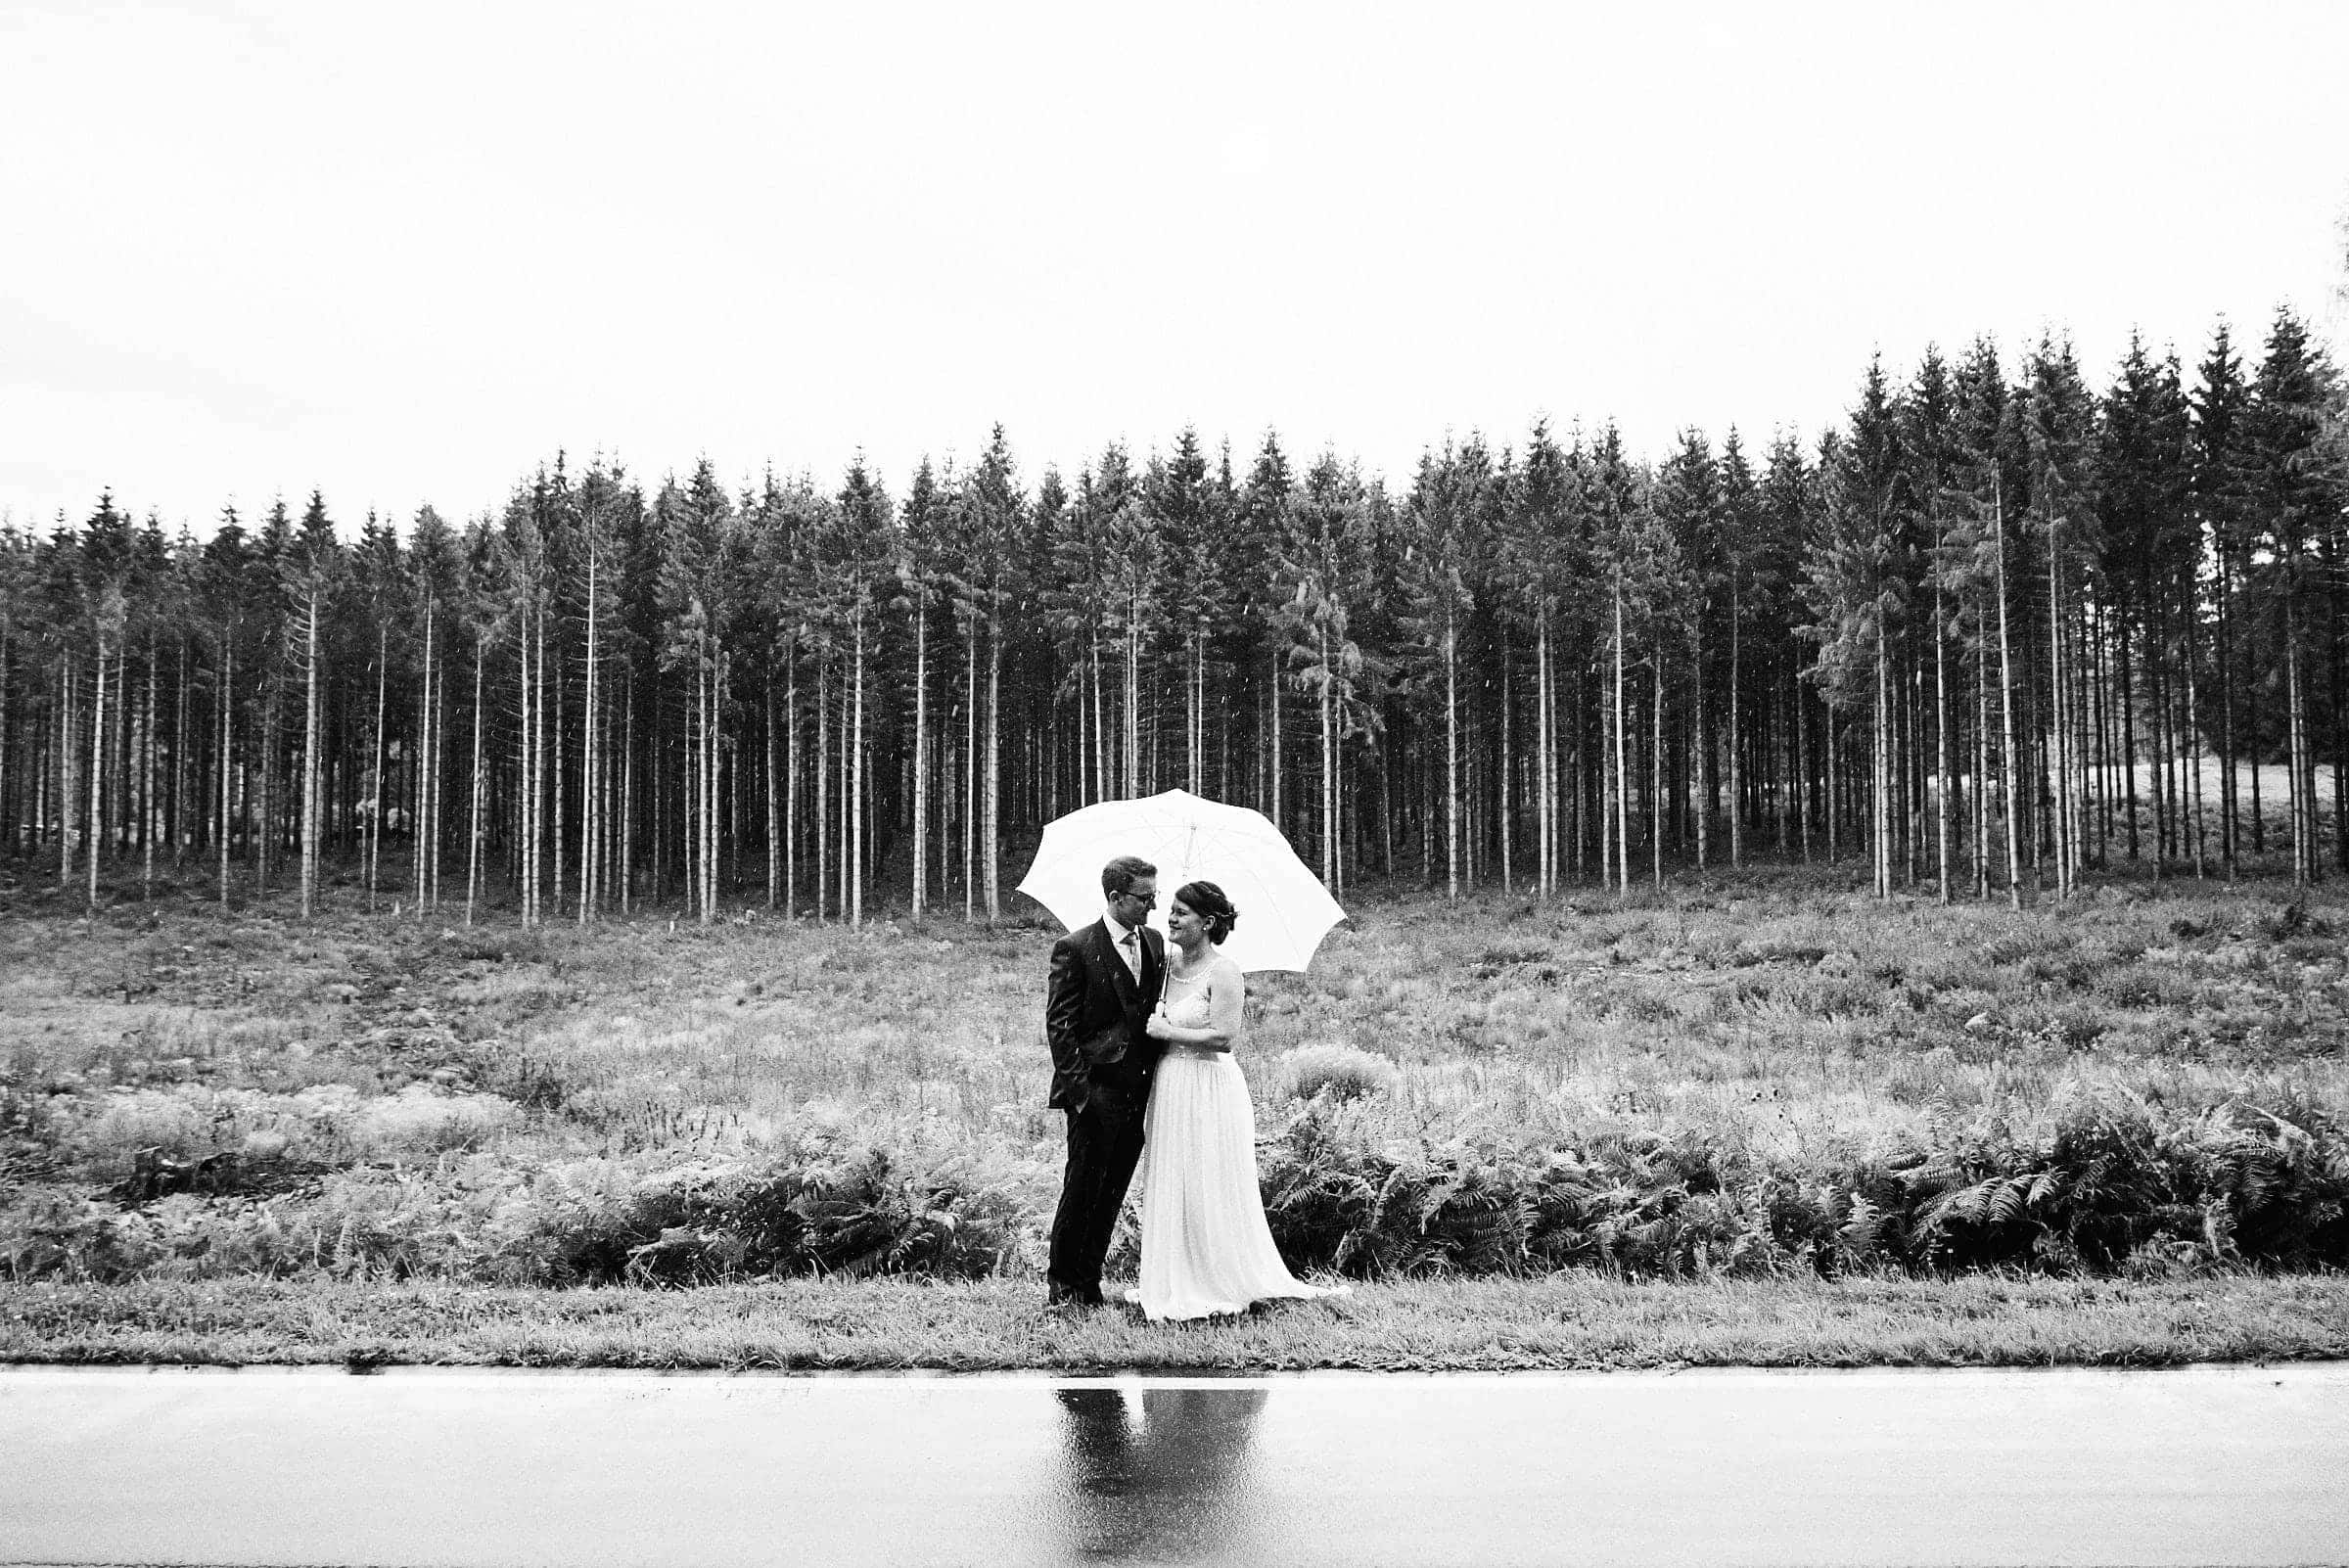 Brautpaar steht zusammen unter einem weißen Regenschirm am Fluss. Im Hintergrund erstreckt sich ein großer Nadelwald. Die Aufnahme ist in schwarzweiß.